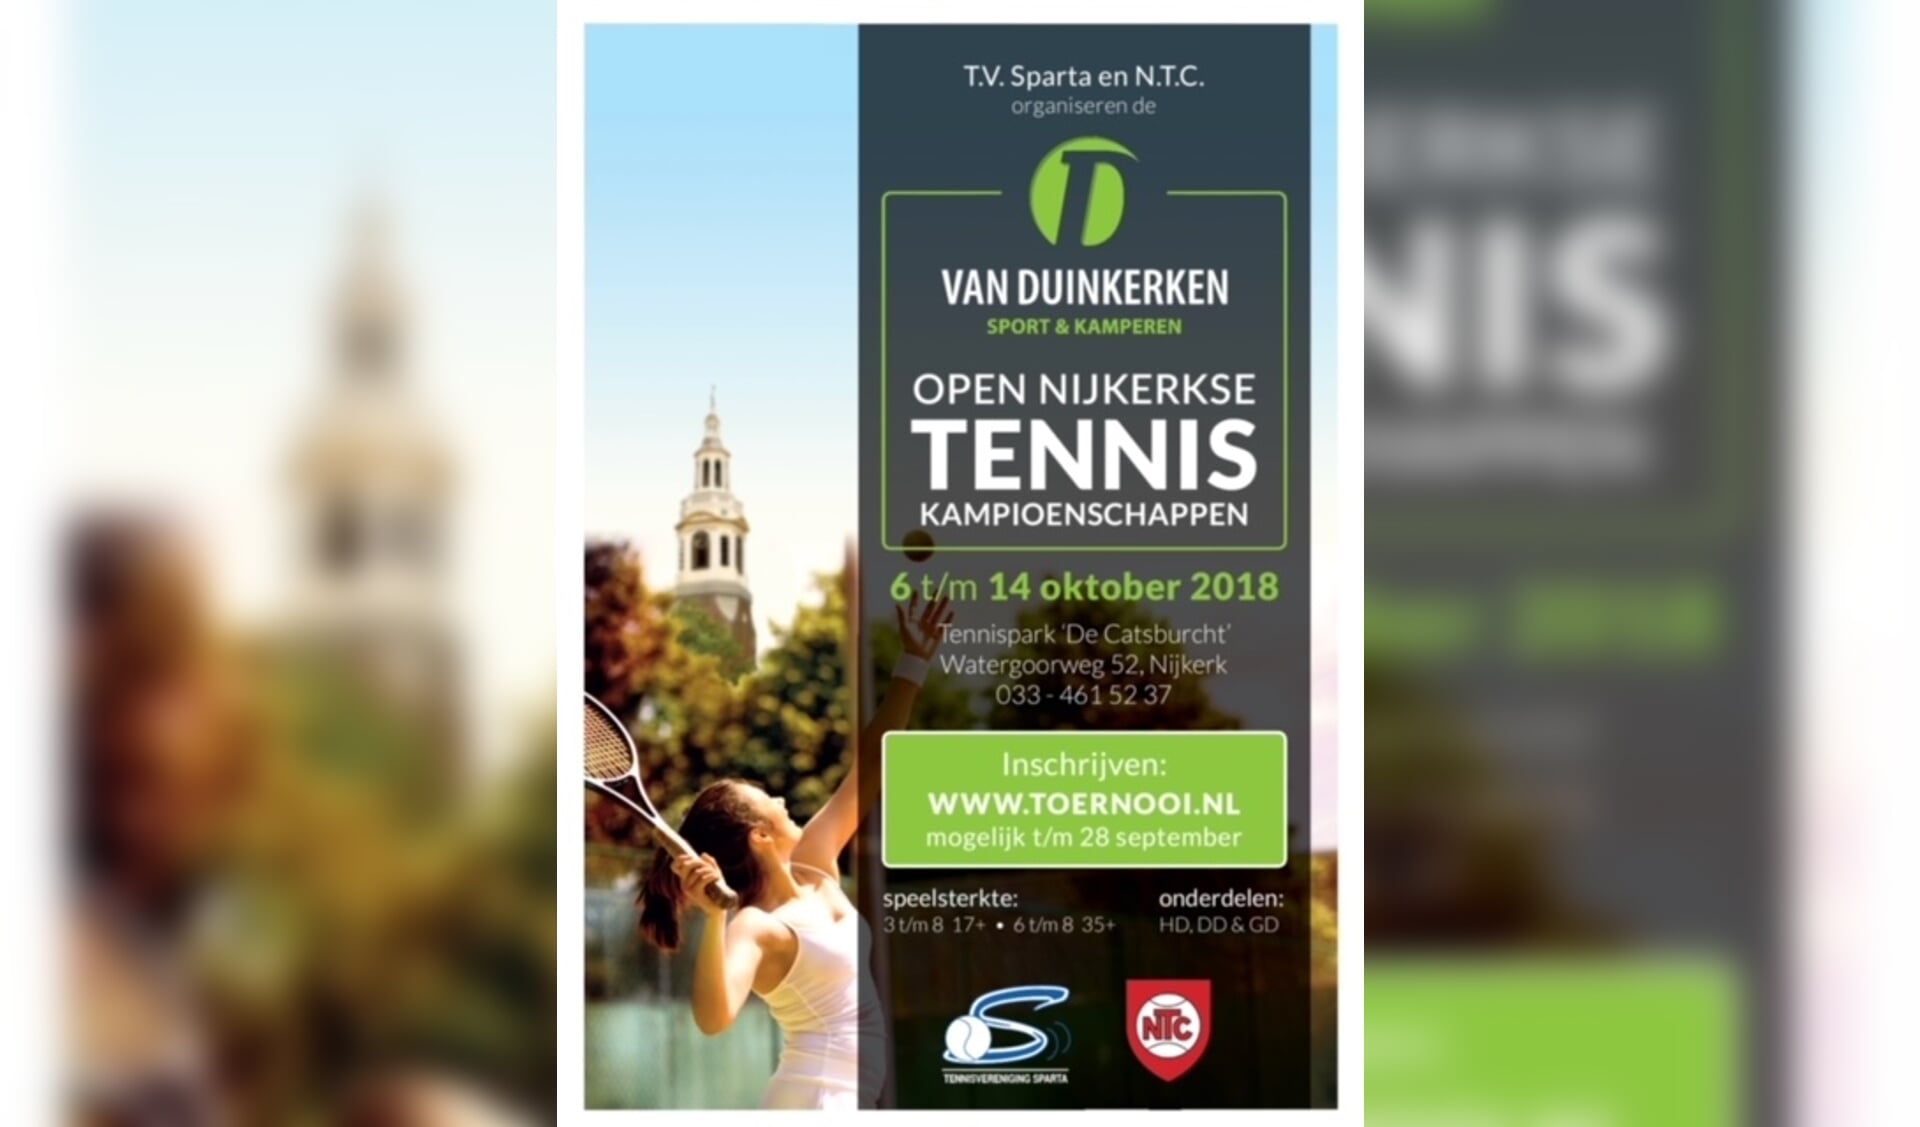 Van Duinkerken Open Nijkerkse Tenniskampioenschappen